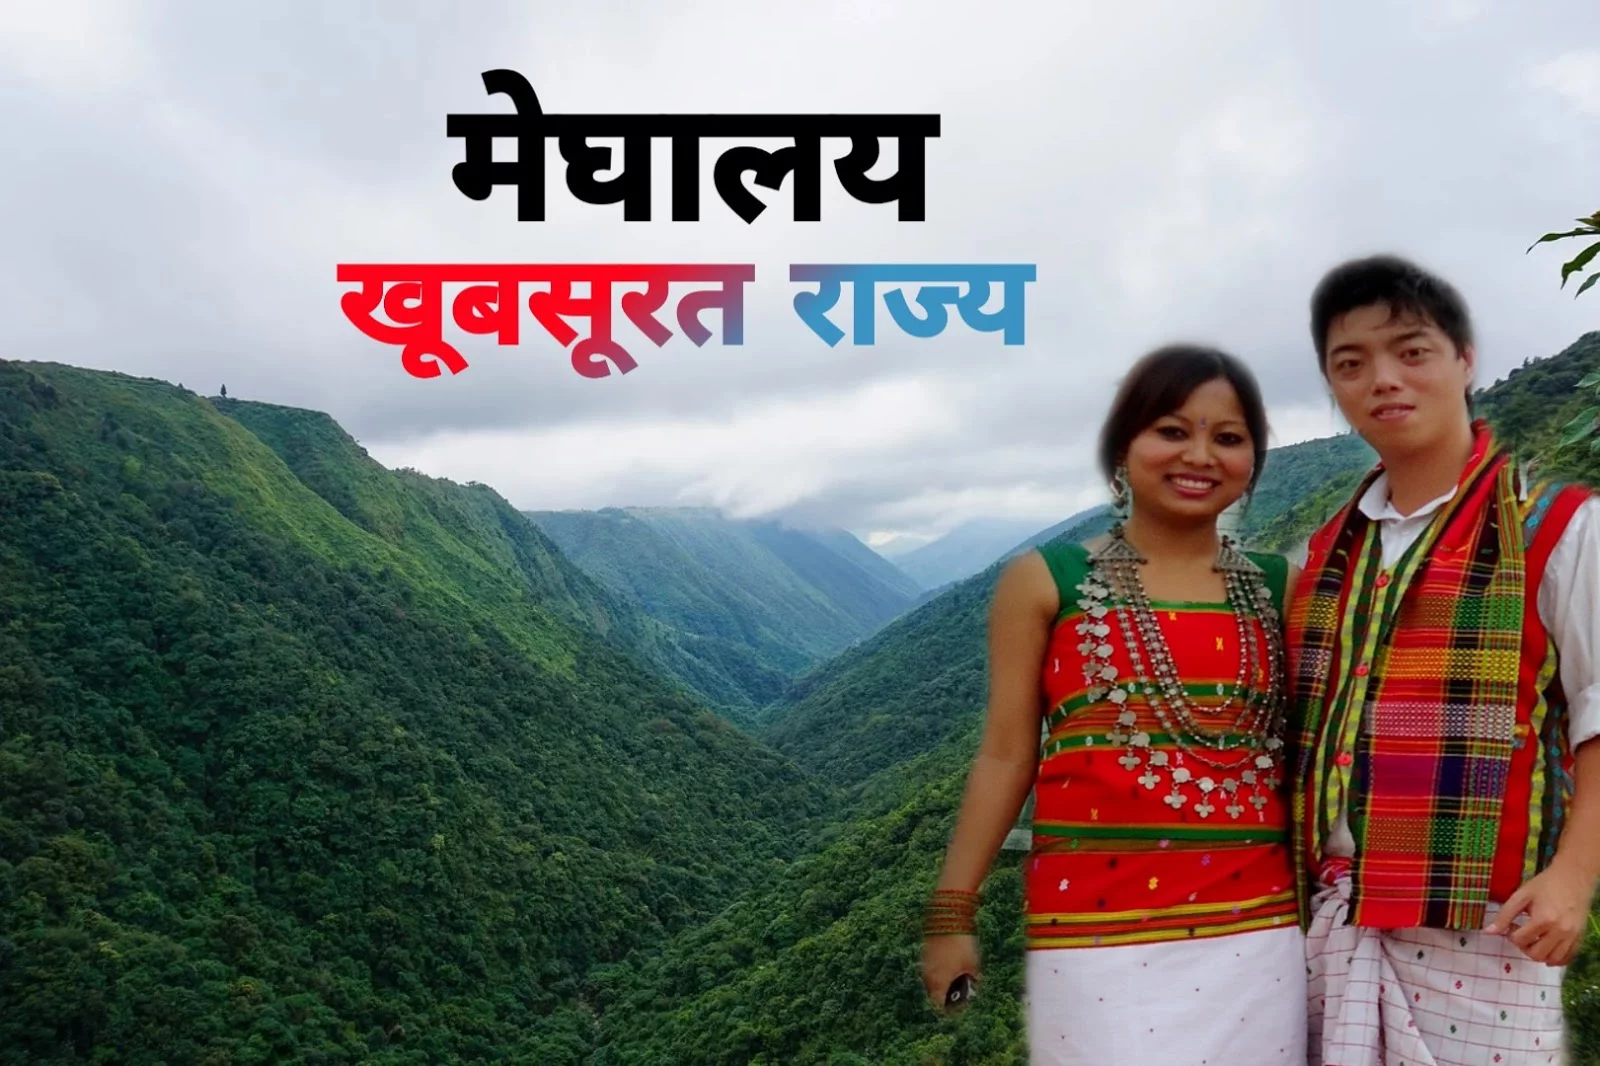  Interesting facts about Meghalaya in Hindi - मेघालय के बारे में रोचाक्त तथ्य और जानकारी